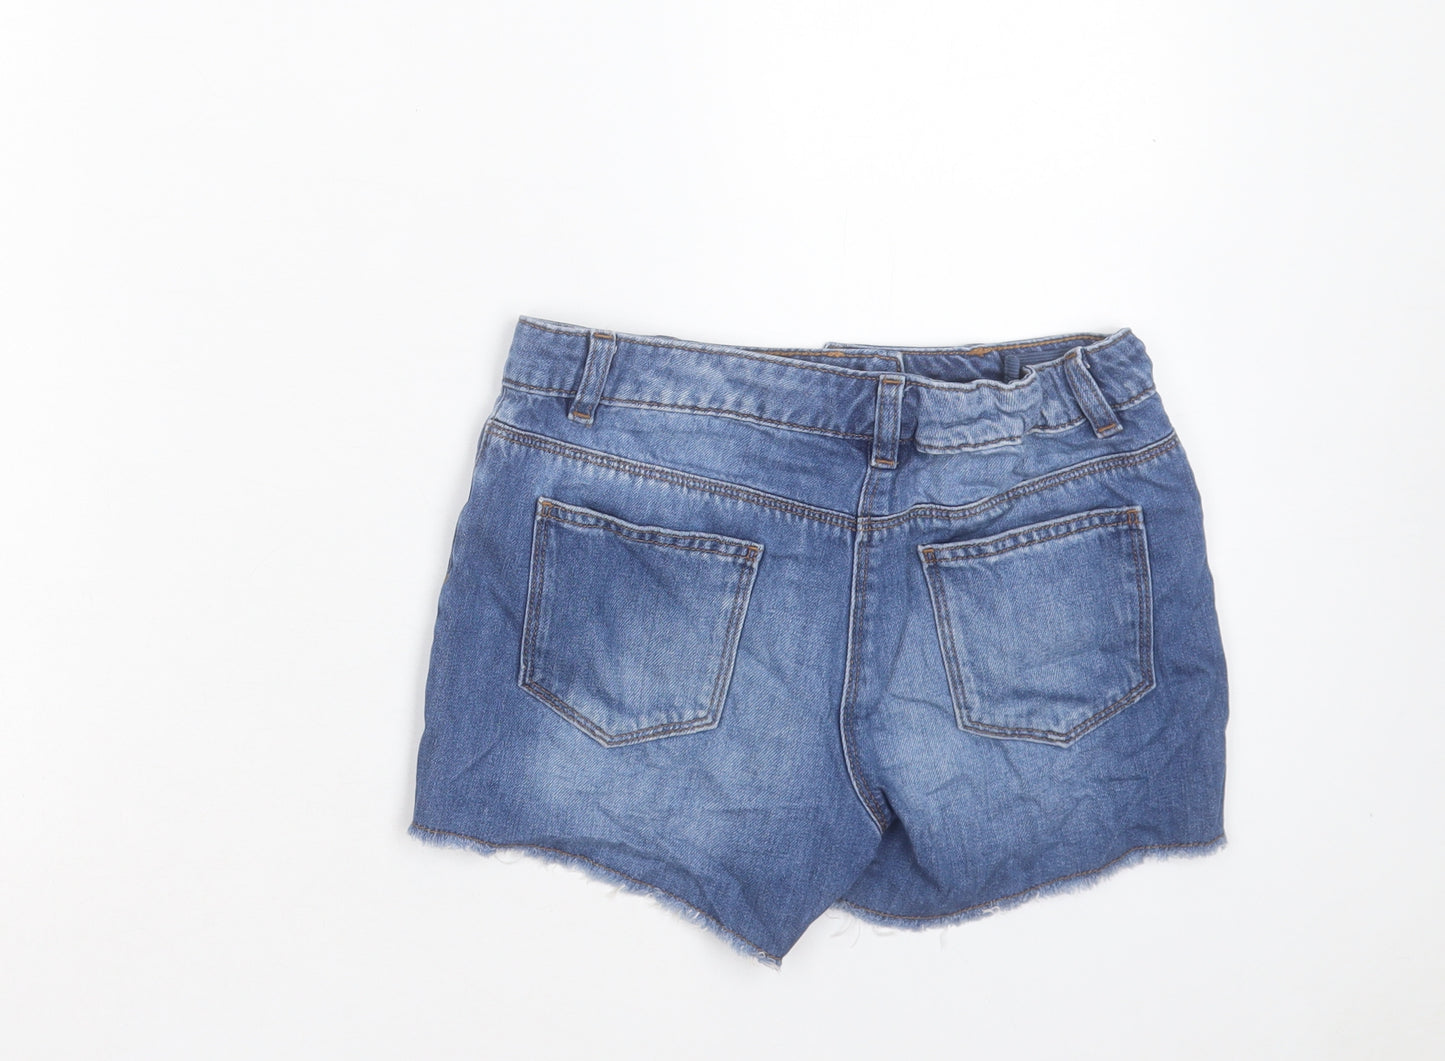 NEXT Girls Blue Cotton Cut-Off Shorts Size 12 Years Regular Zip